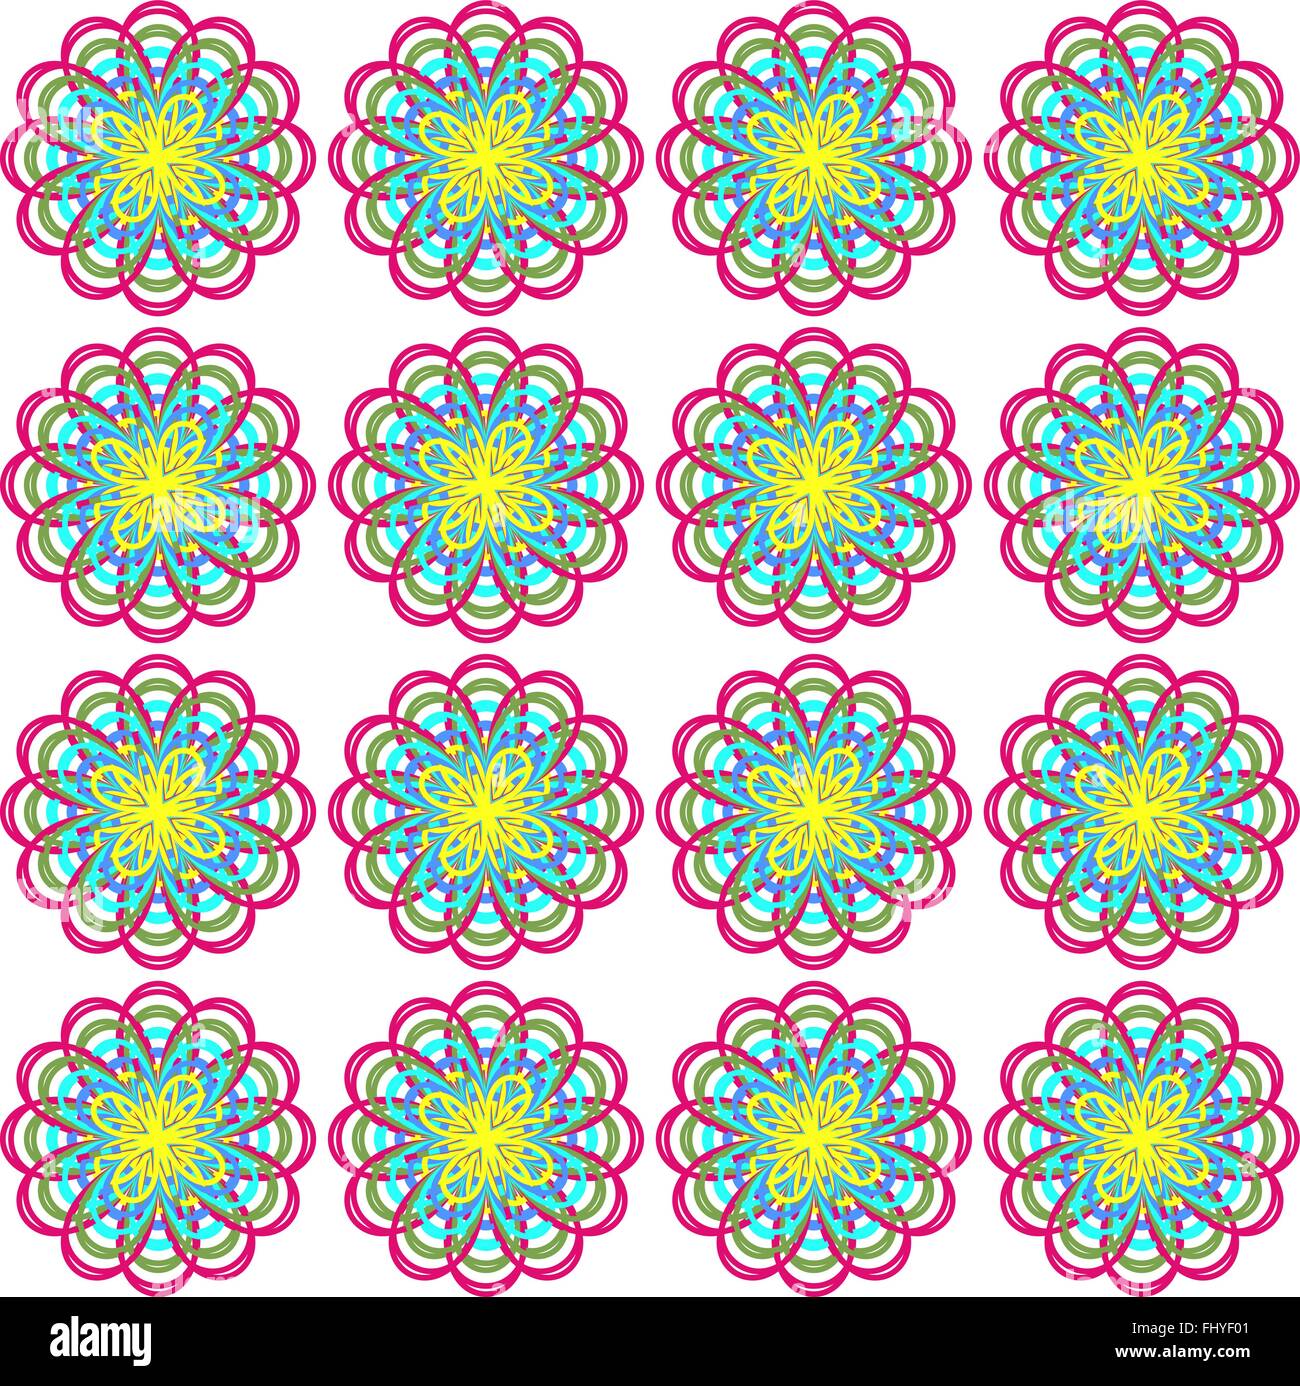 Blumen-Print für Stoff. Nahtlose Muster in verschiedenen Farben mit dominanten rosa Farbe. Digitale Vektorgrafik Hintergrund. Stock Vektor